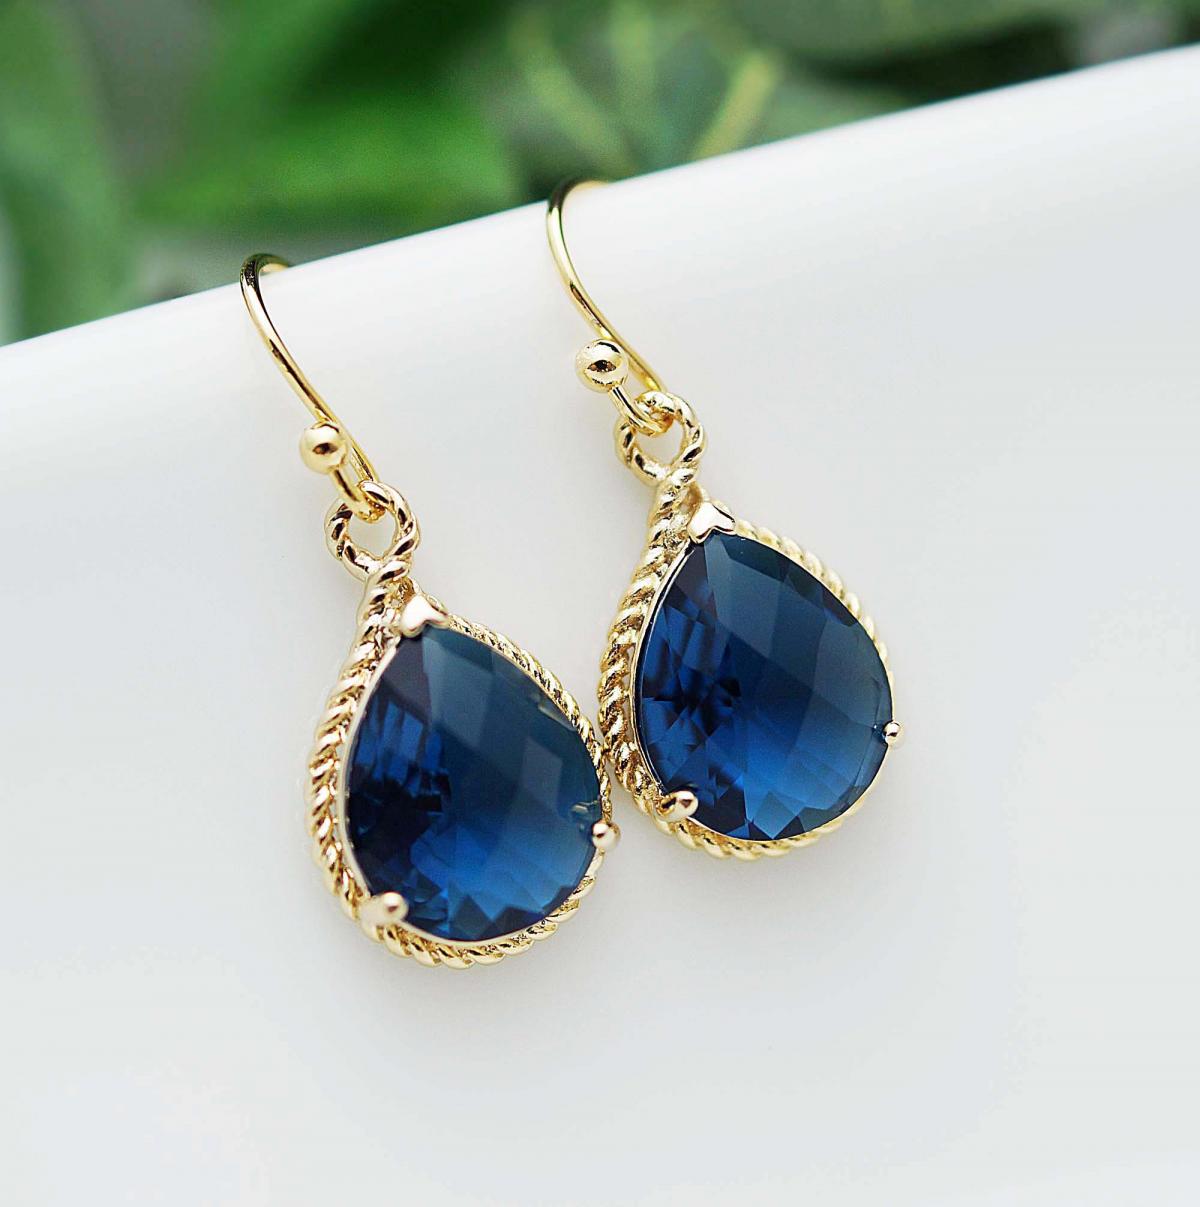 Wedding Jewelry Dangle Earrings Bridal Earrings Bridesmaid Earrings Sapphire Blue Glass Pear Cut Earrings